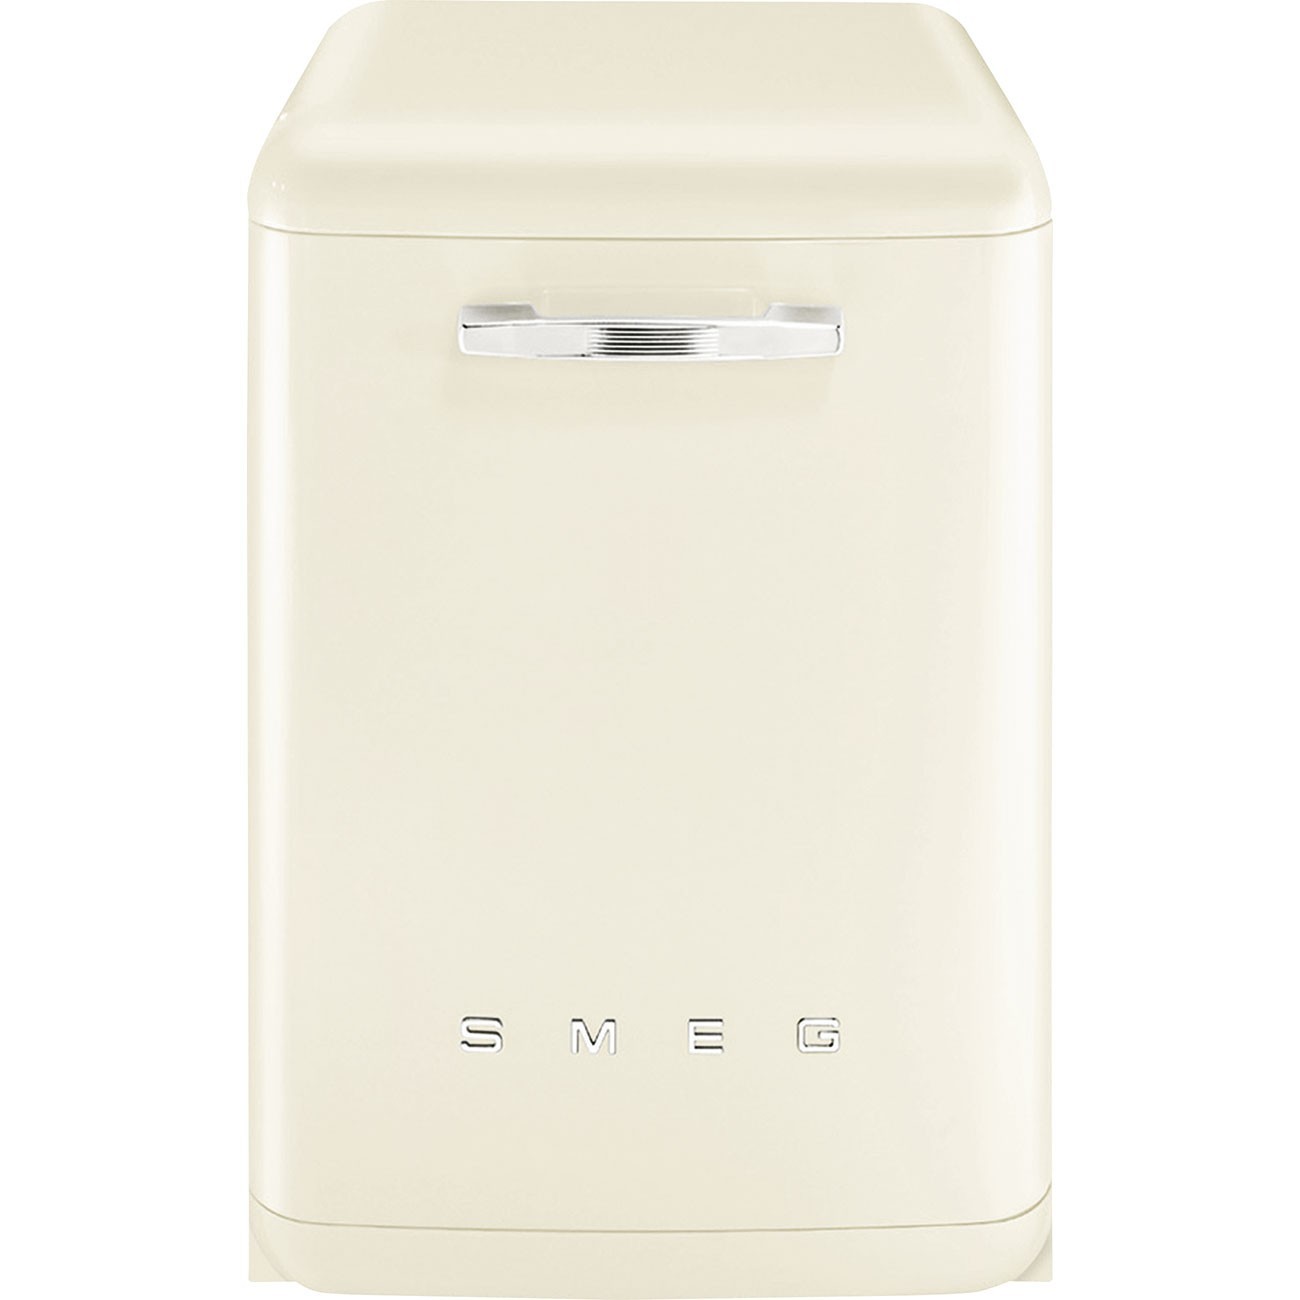 Lave-vaisselle Miele Lave vaisselle 60 cm G 5310 SC Blanc Active Plus